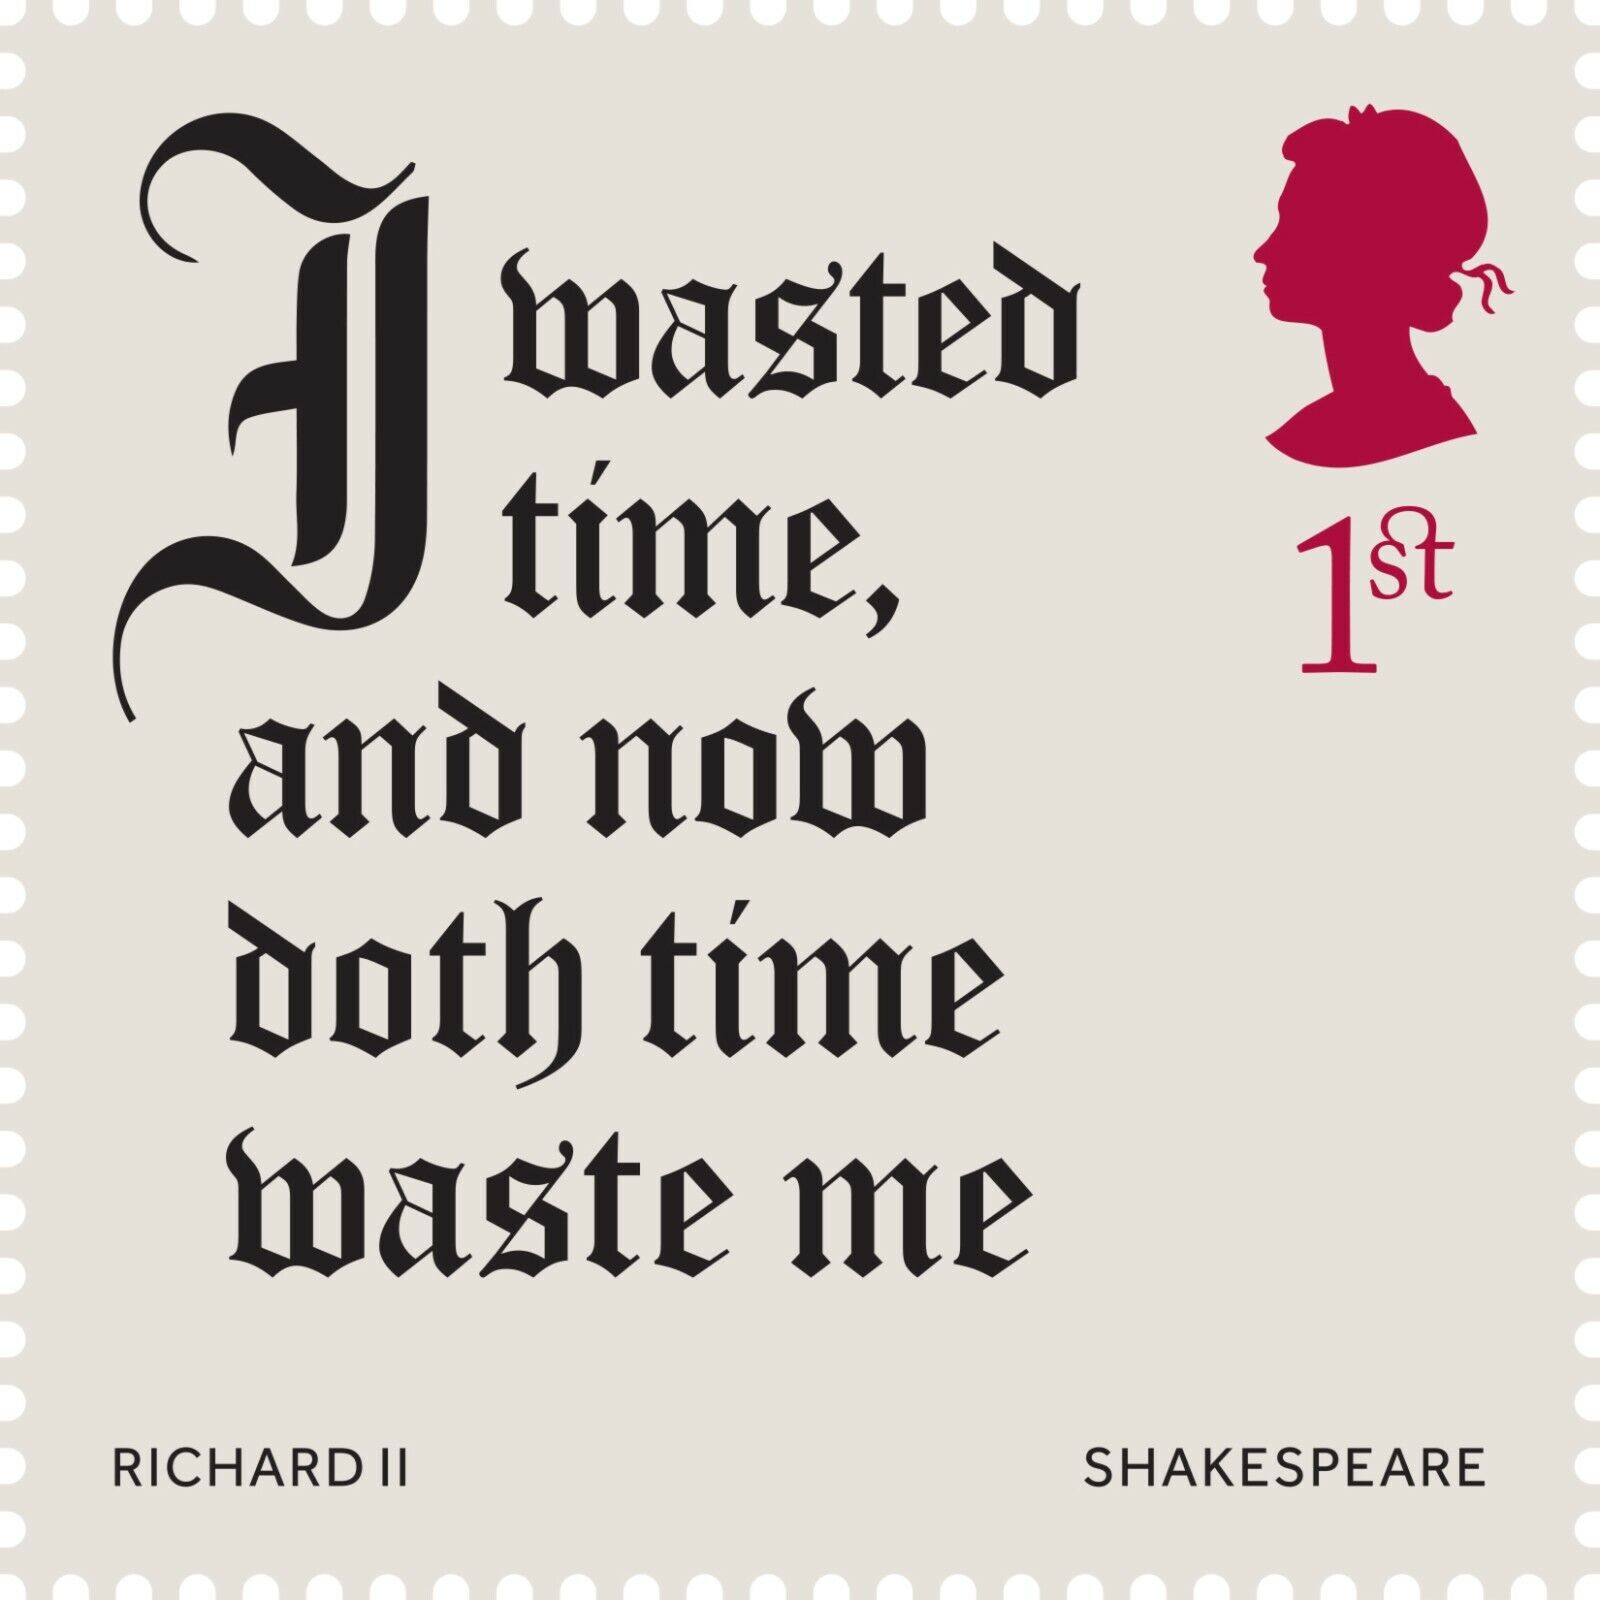 Shakespeare (Richard III) on 2016 stamp